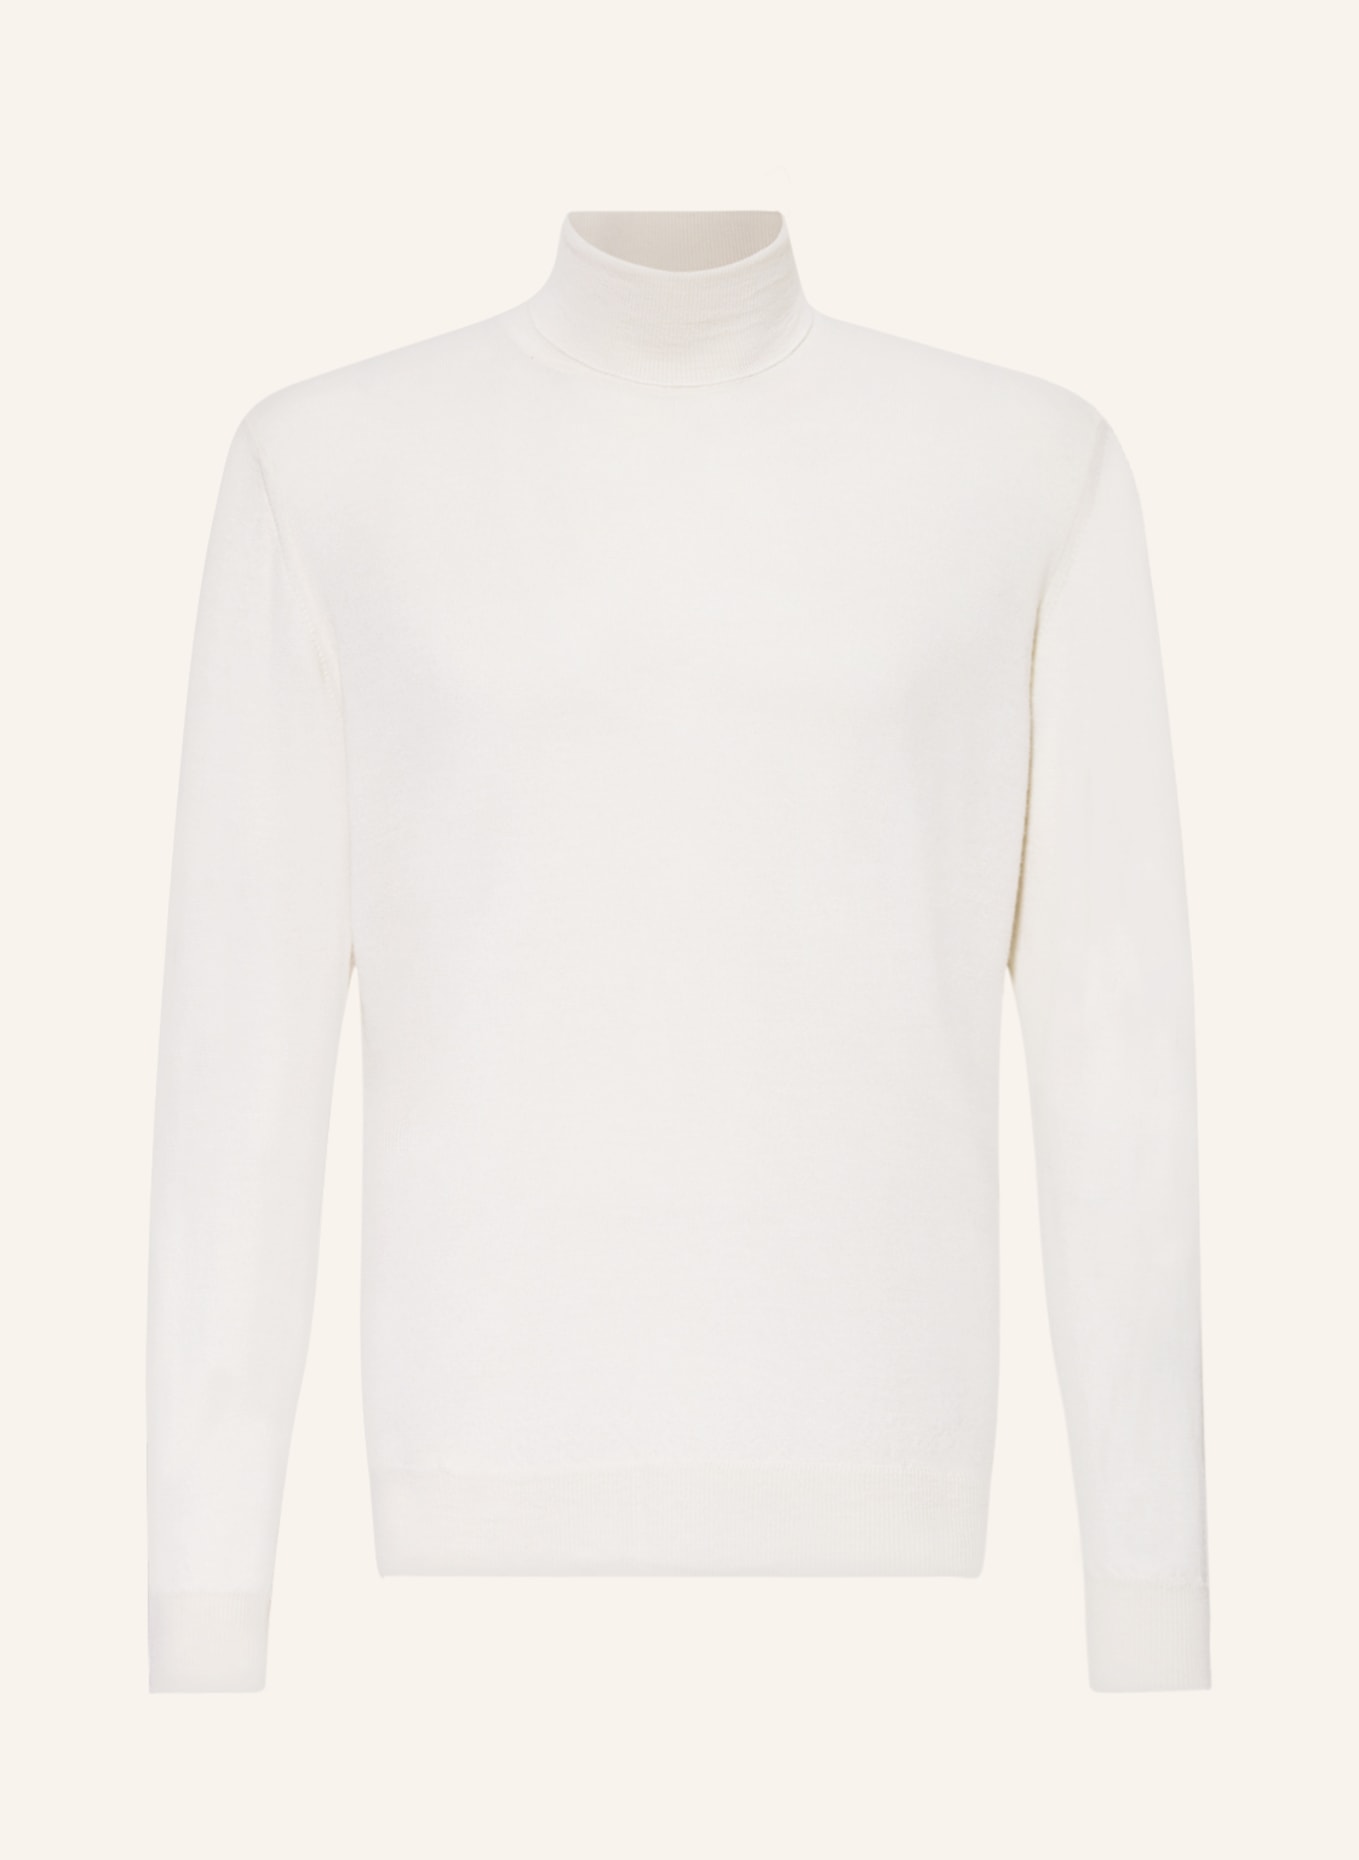 BALDESSARINI Turtleneck sweater, Color: ECRU (Image 1)